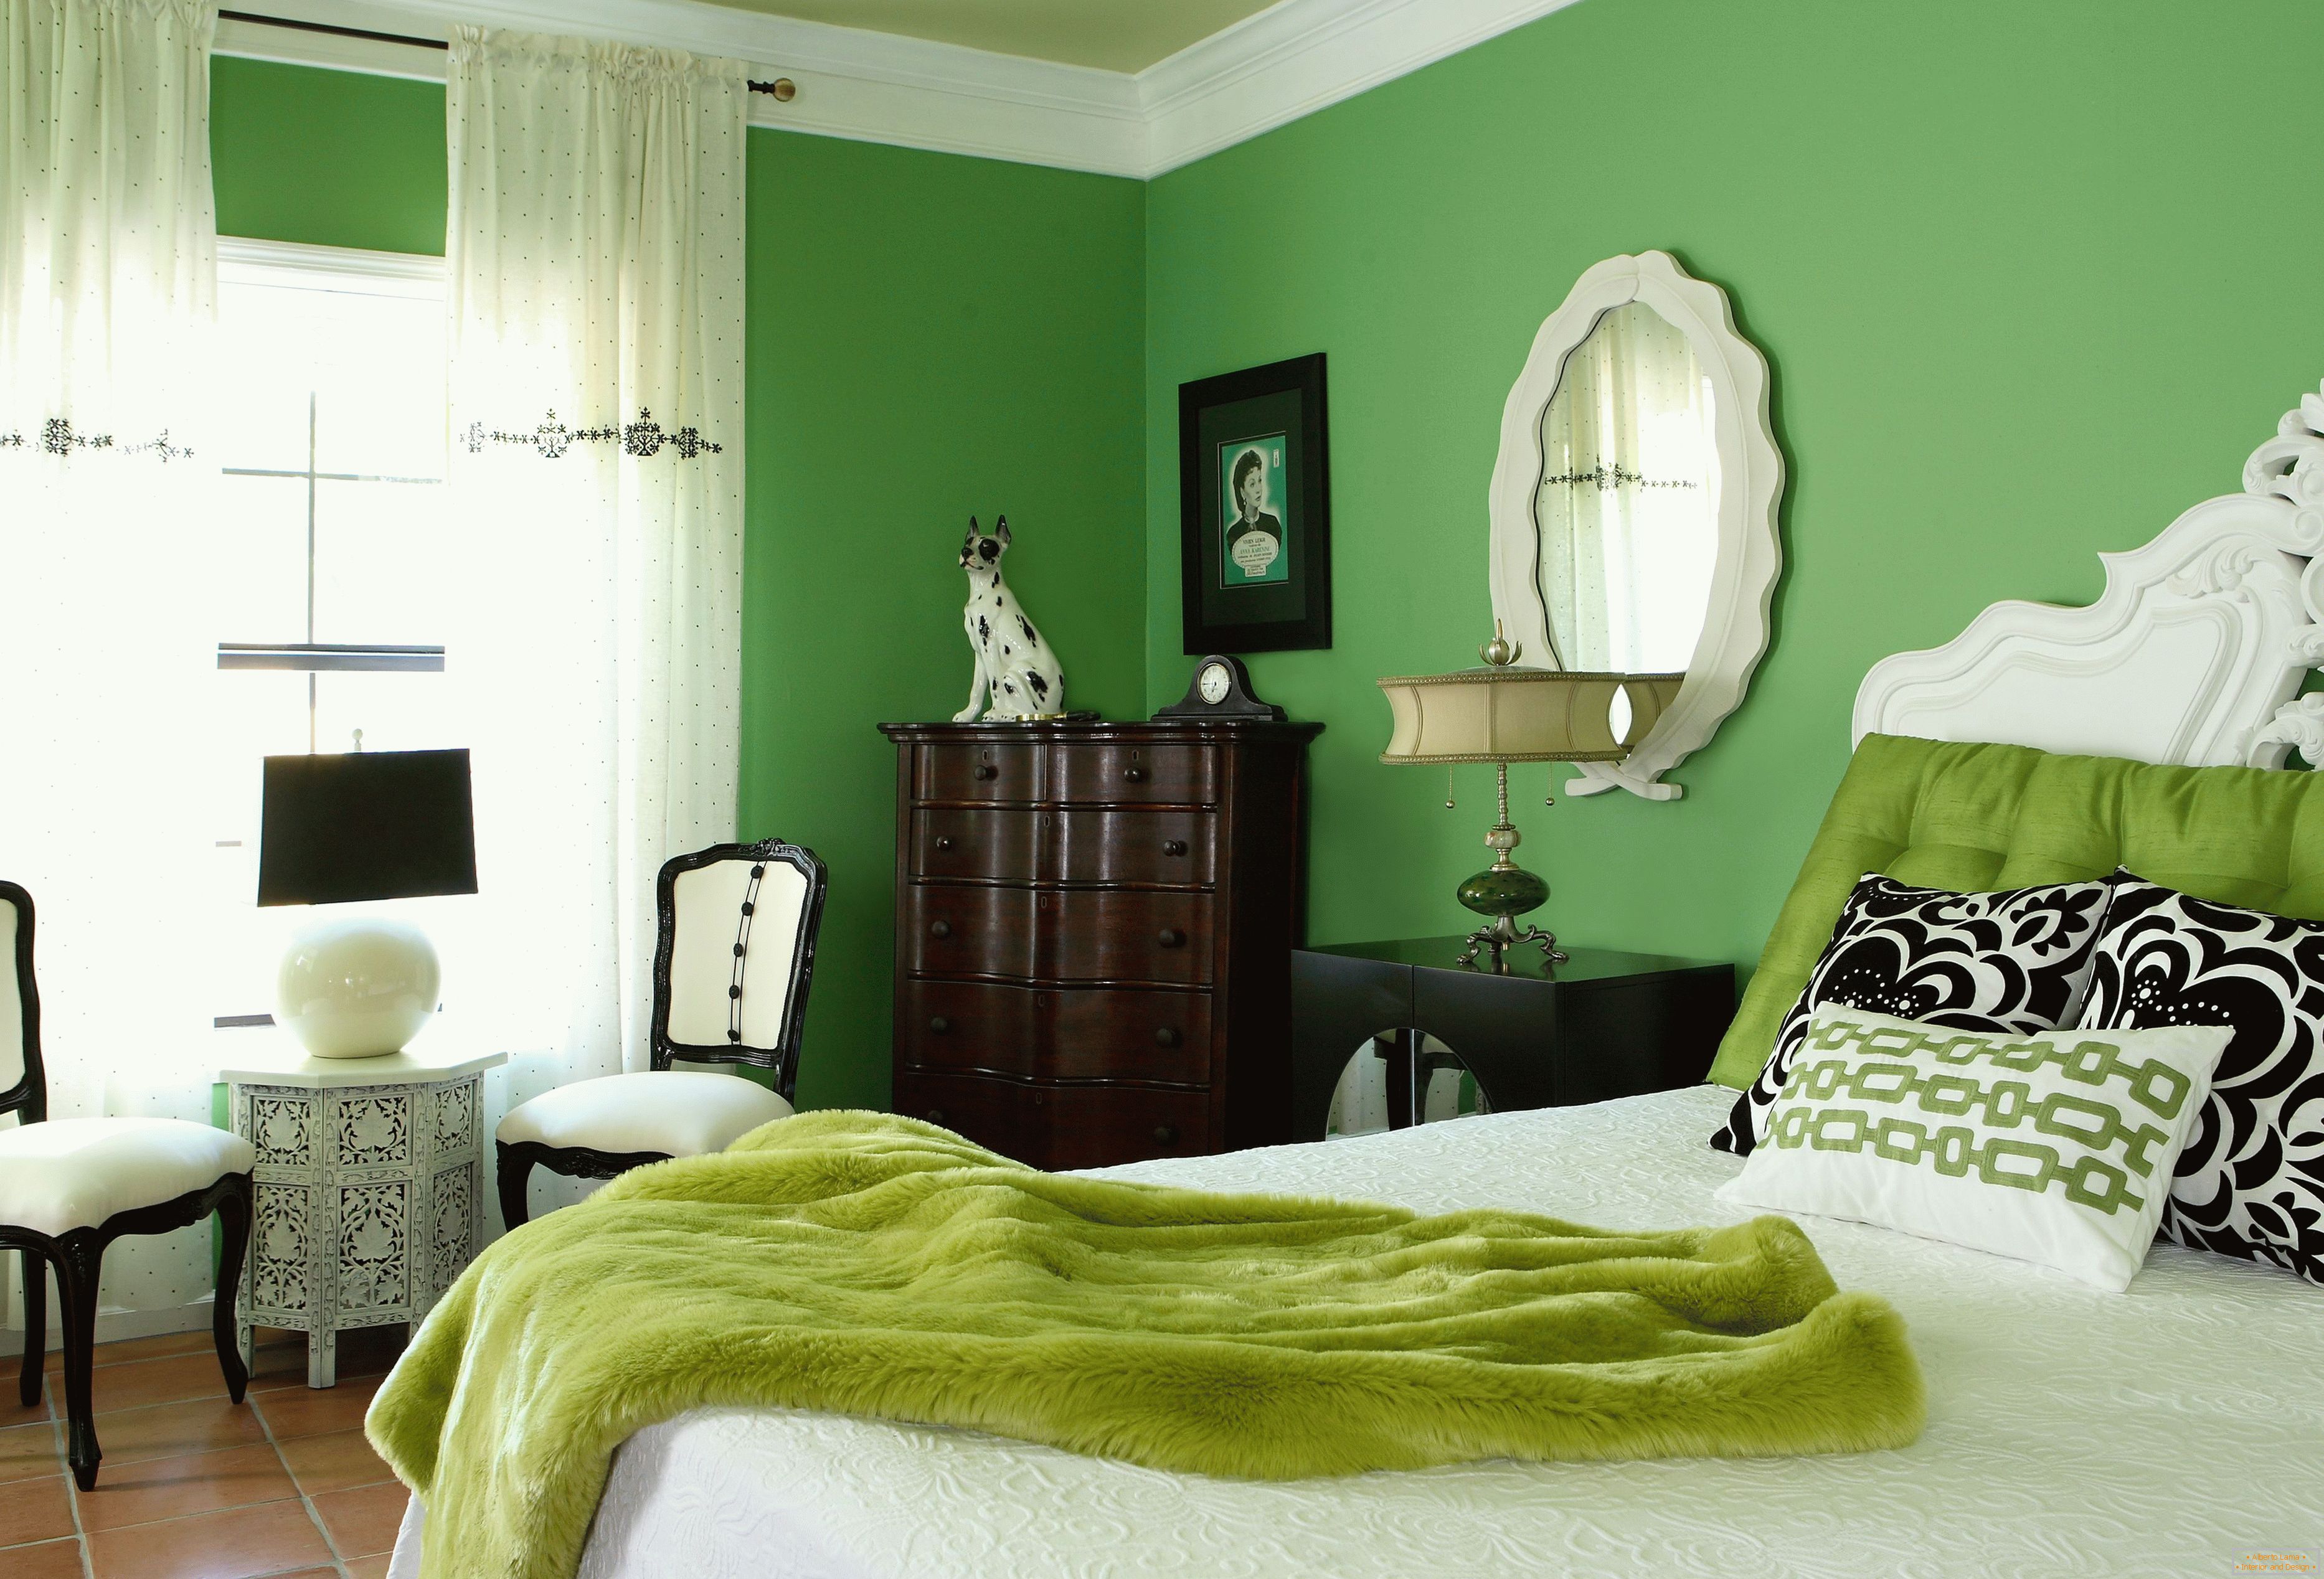 Bedroom in green colors